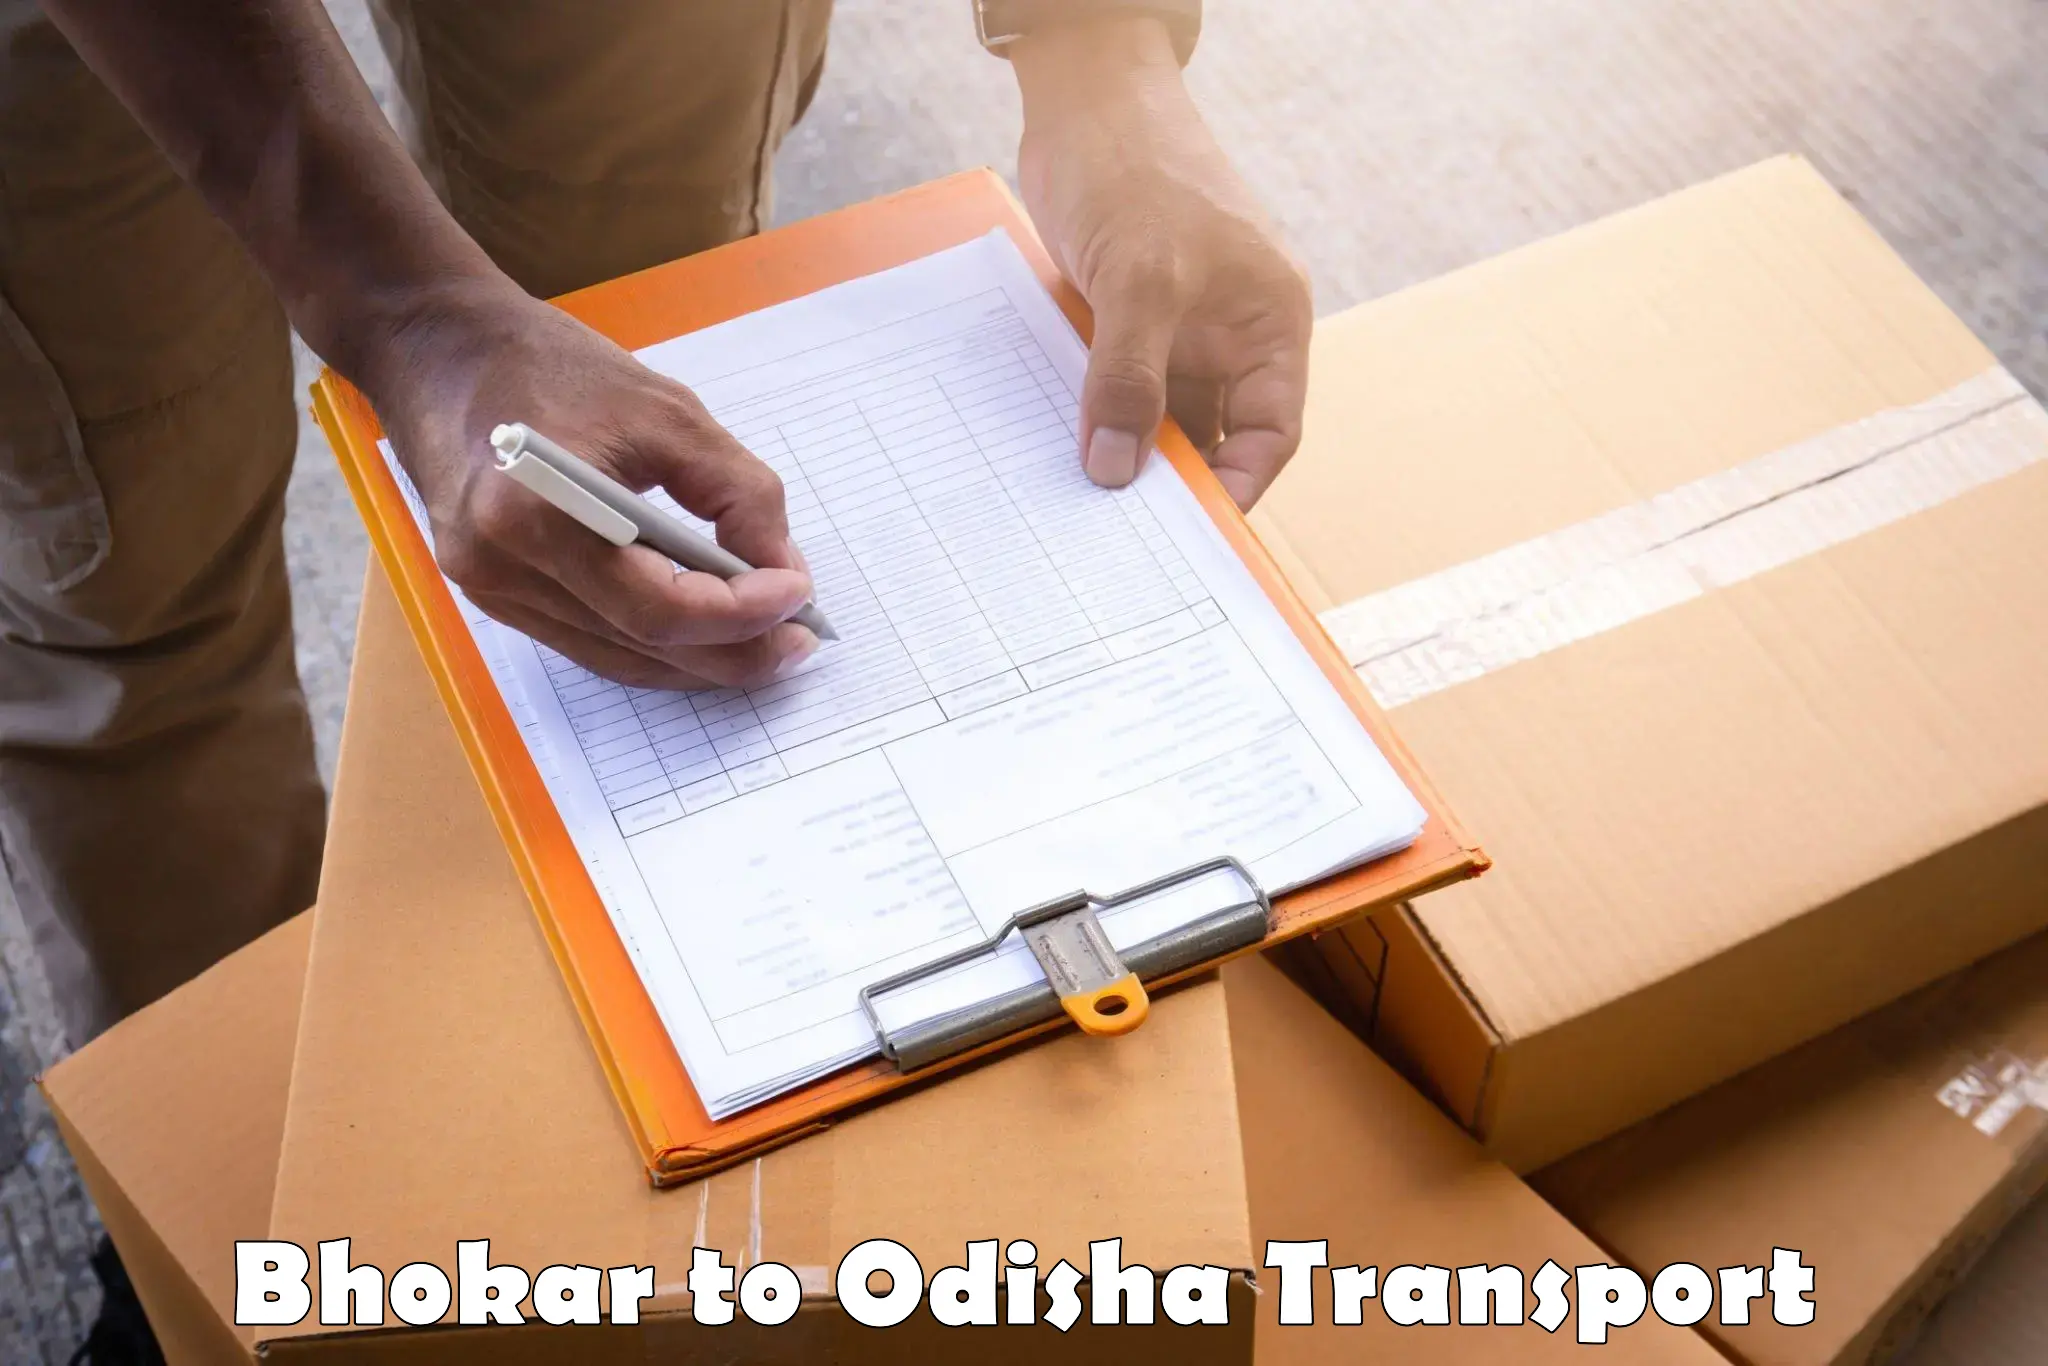 Lorry transport service Bhokar to Kendrapara